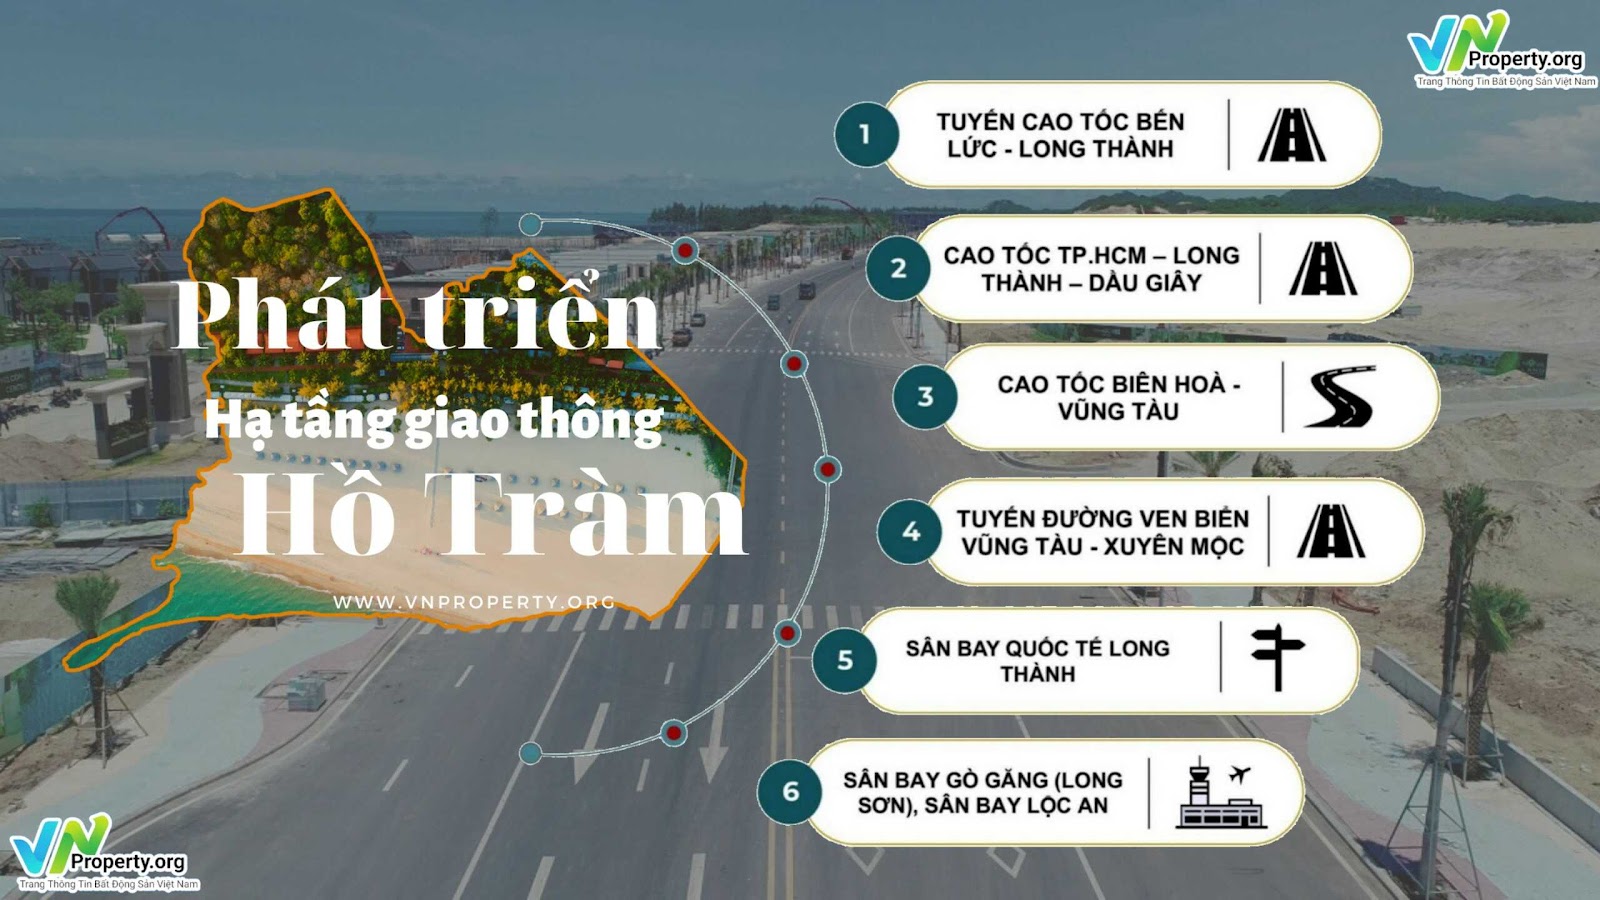 ảnh minh hoạ, 6 yếu tố phát triển về hạ tầng giao thông tại khu du lịch biển Hồ Tràm